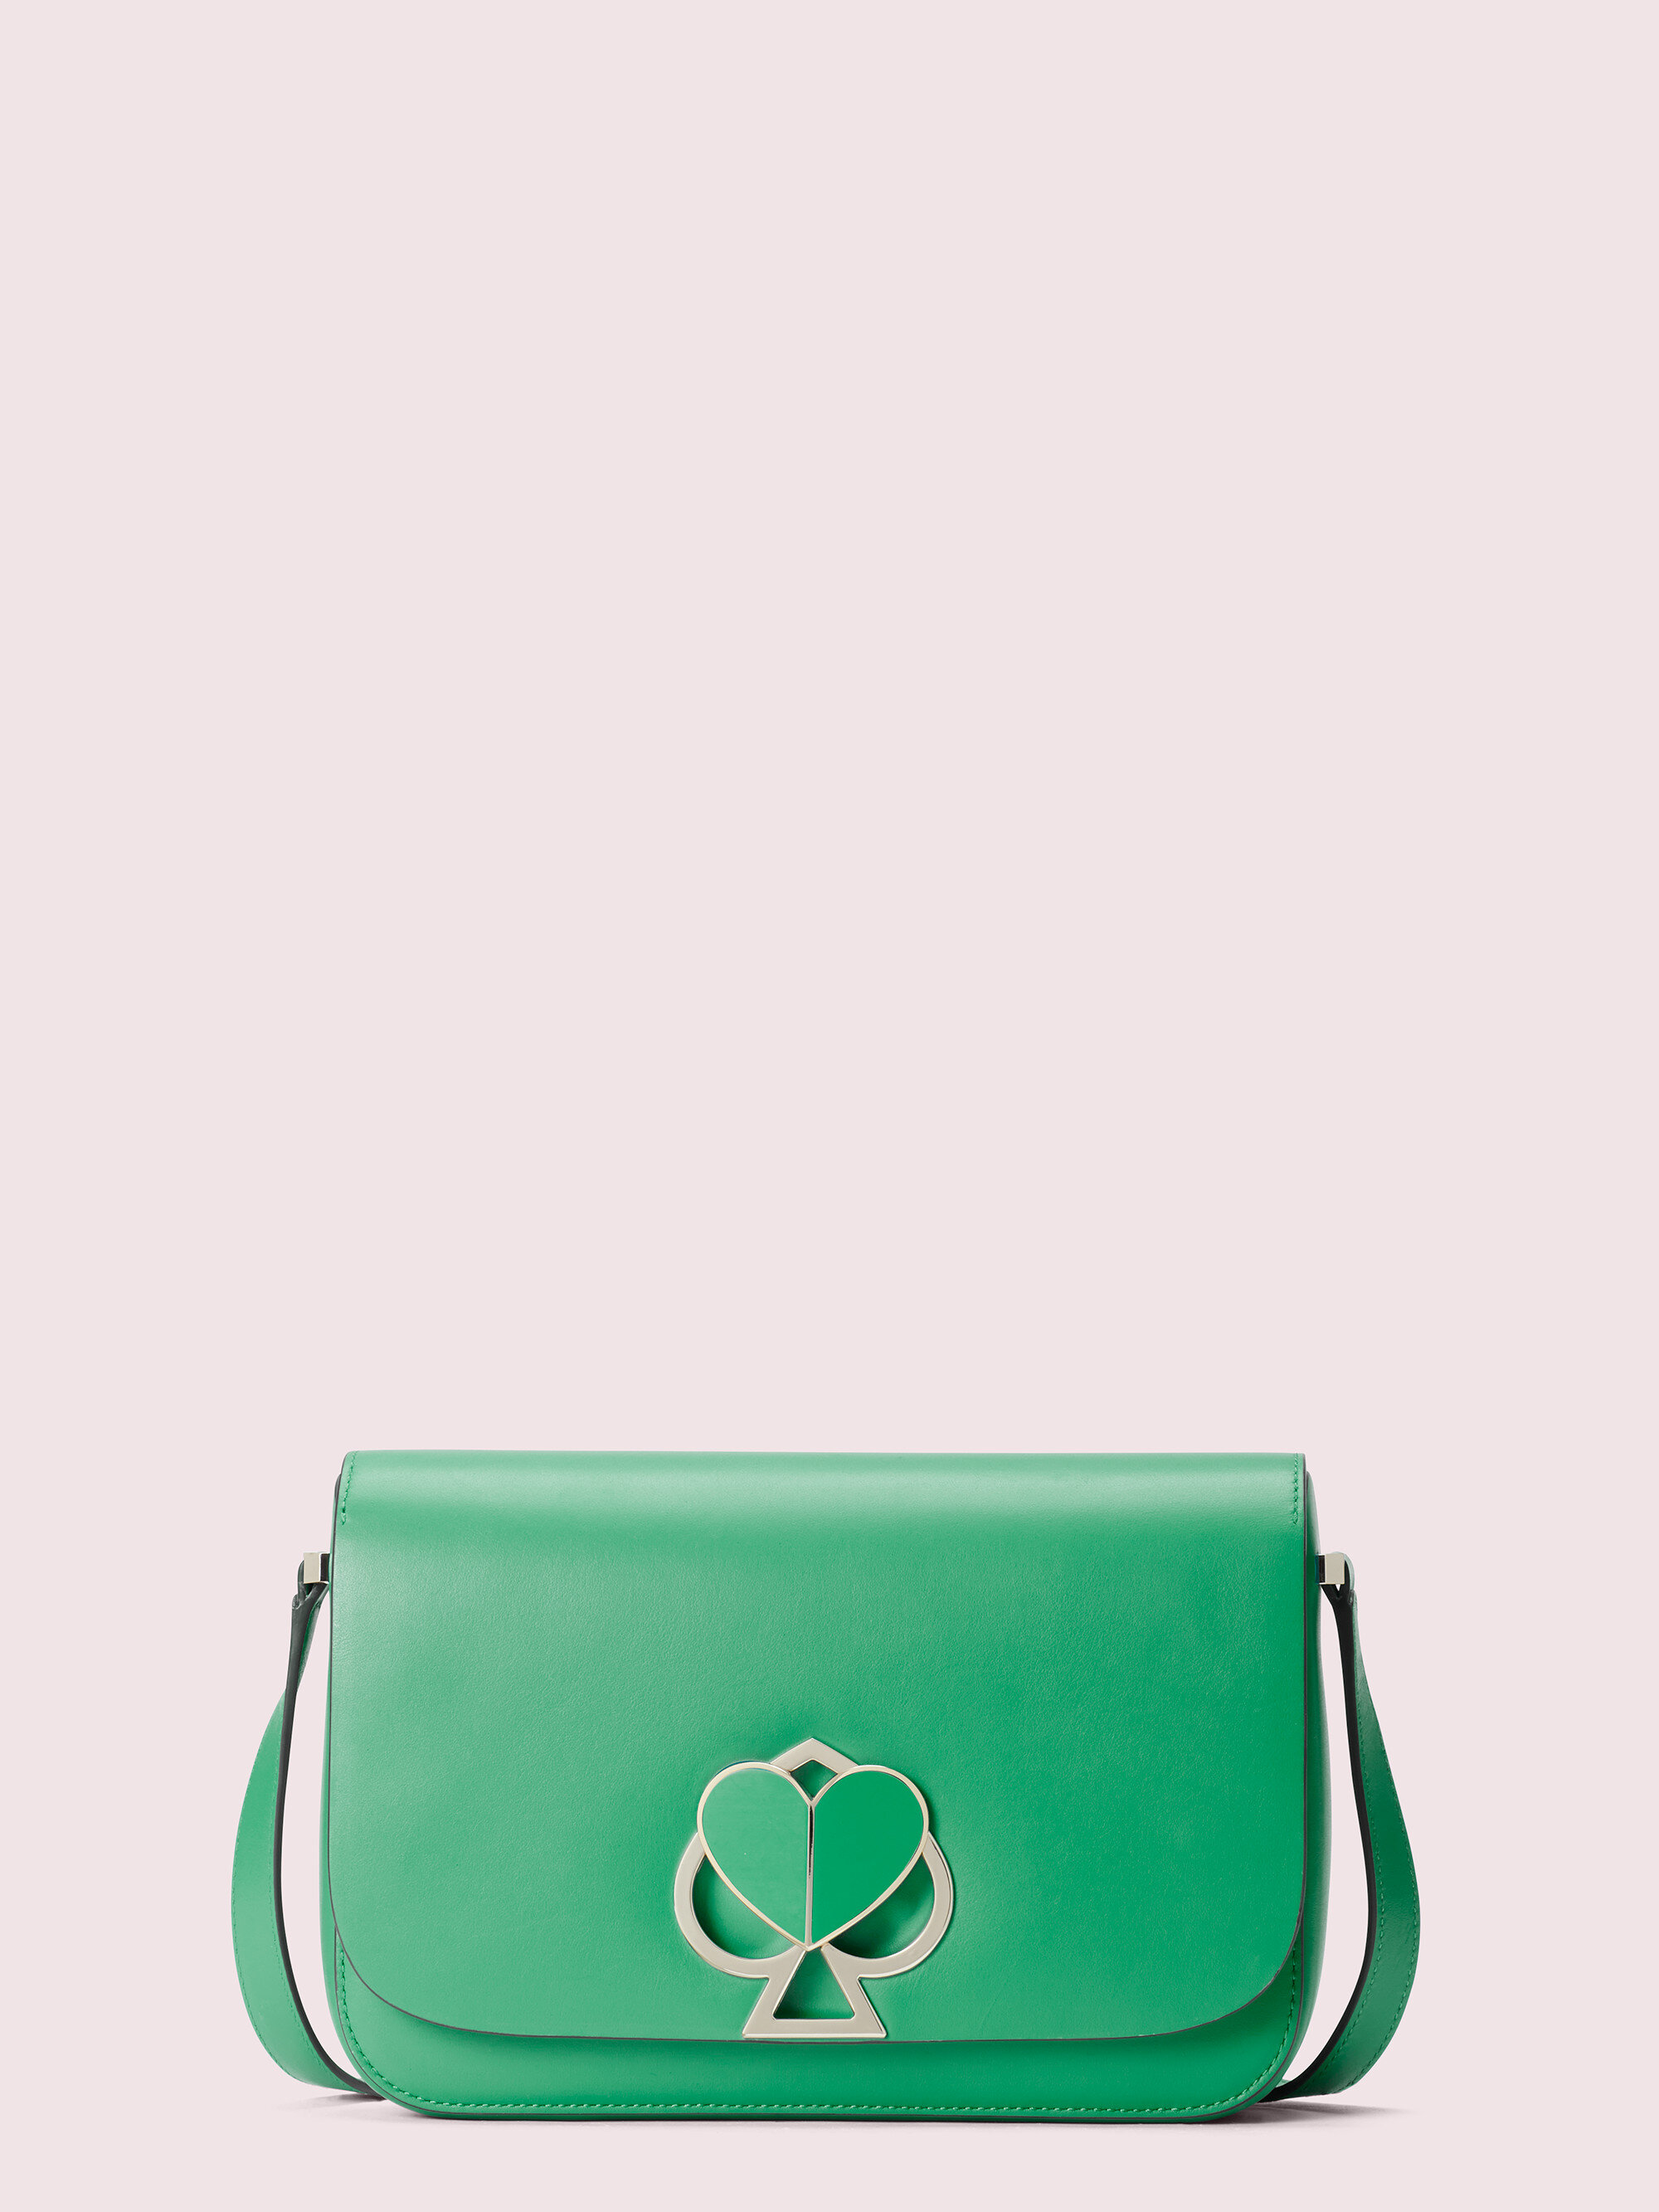 green bag.jpg